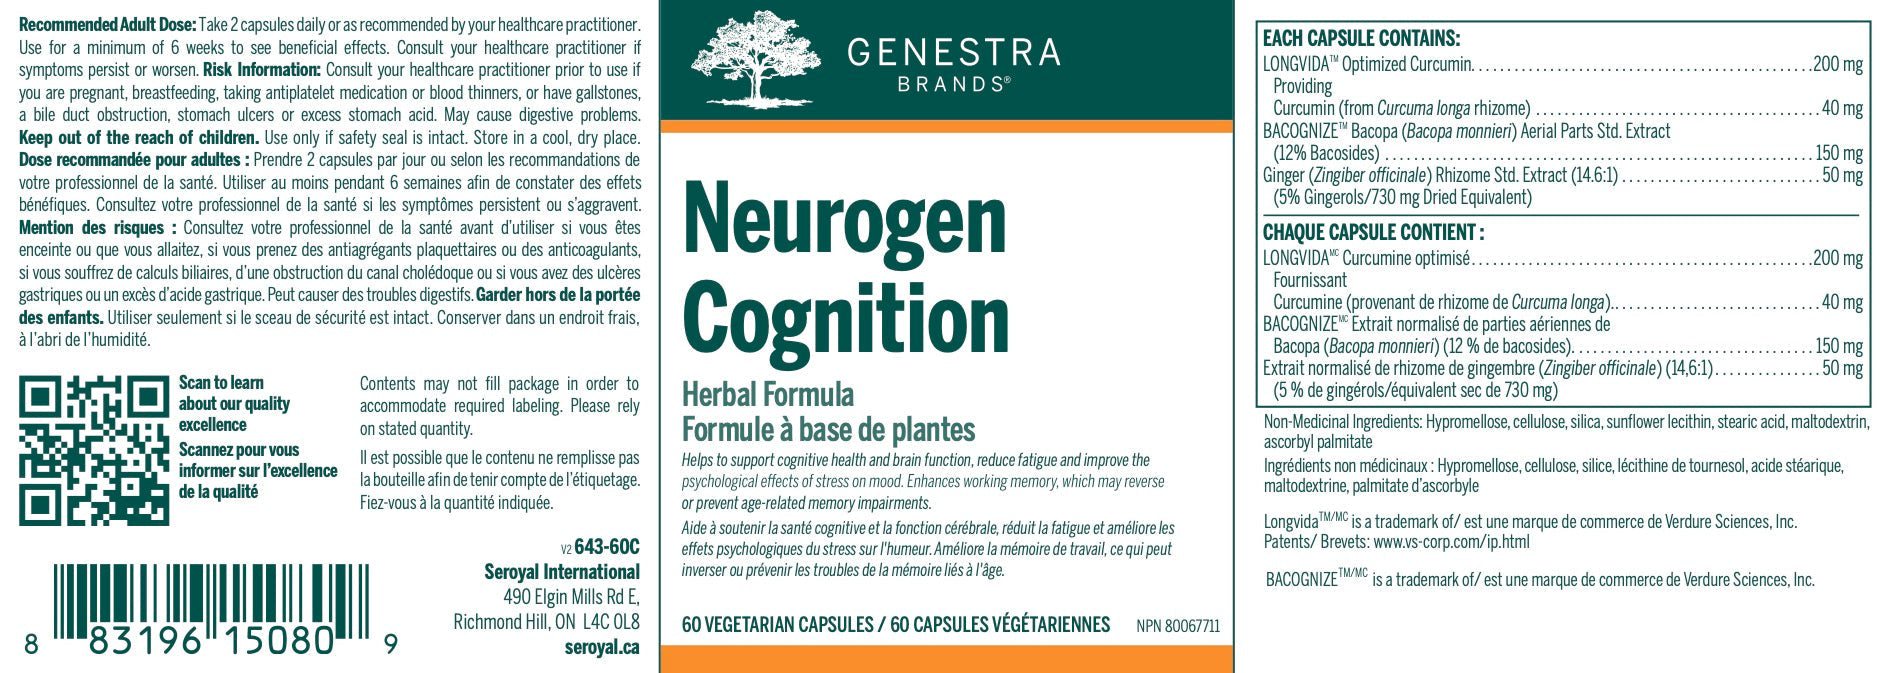 Neurogen Cognition